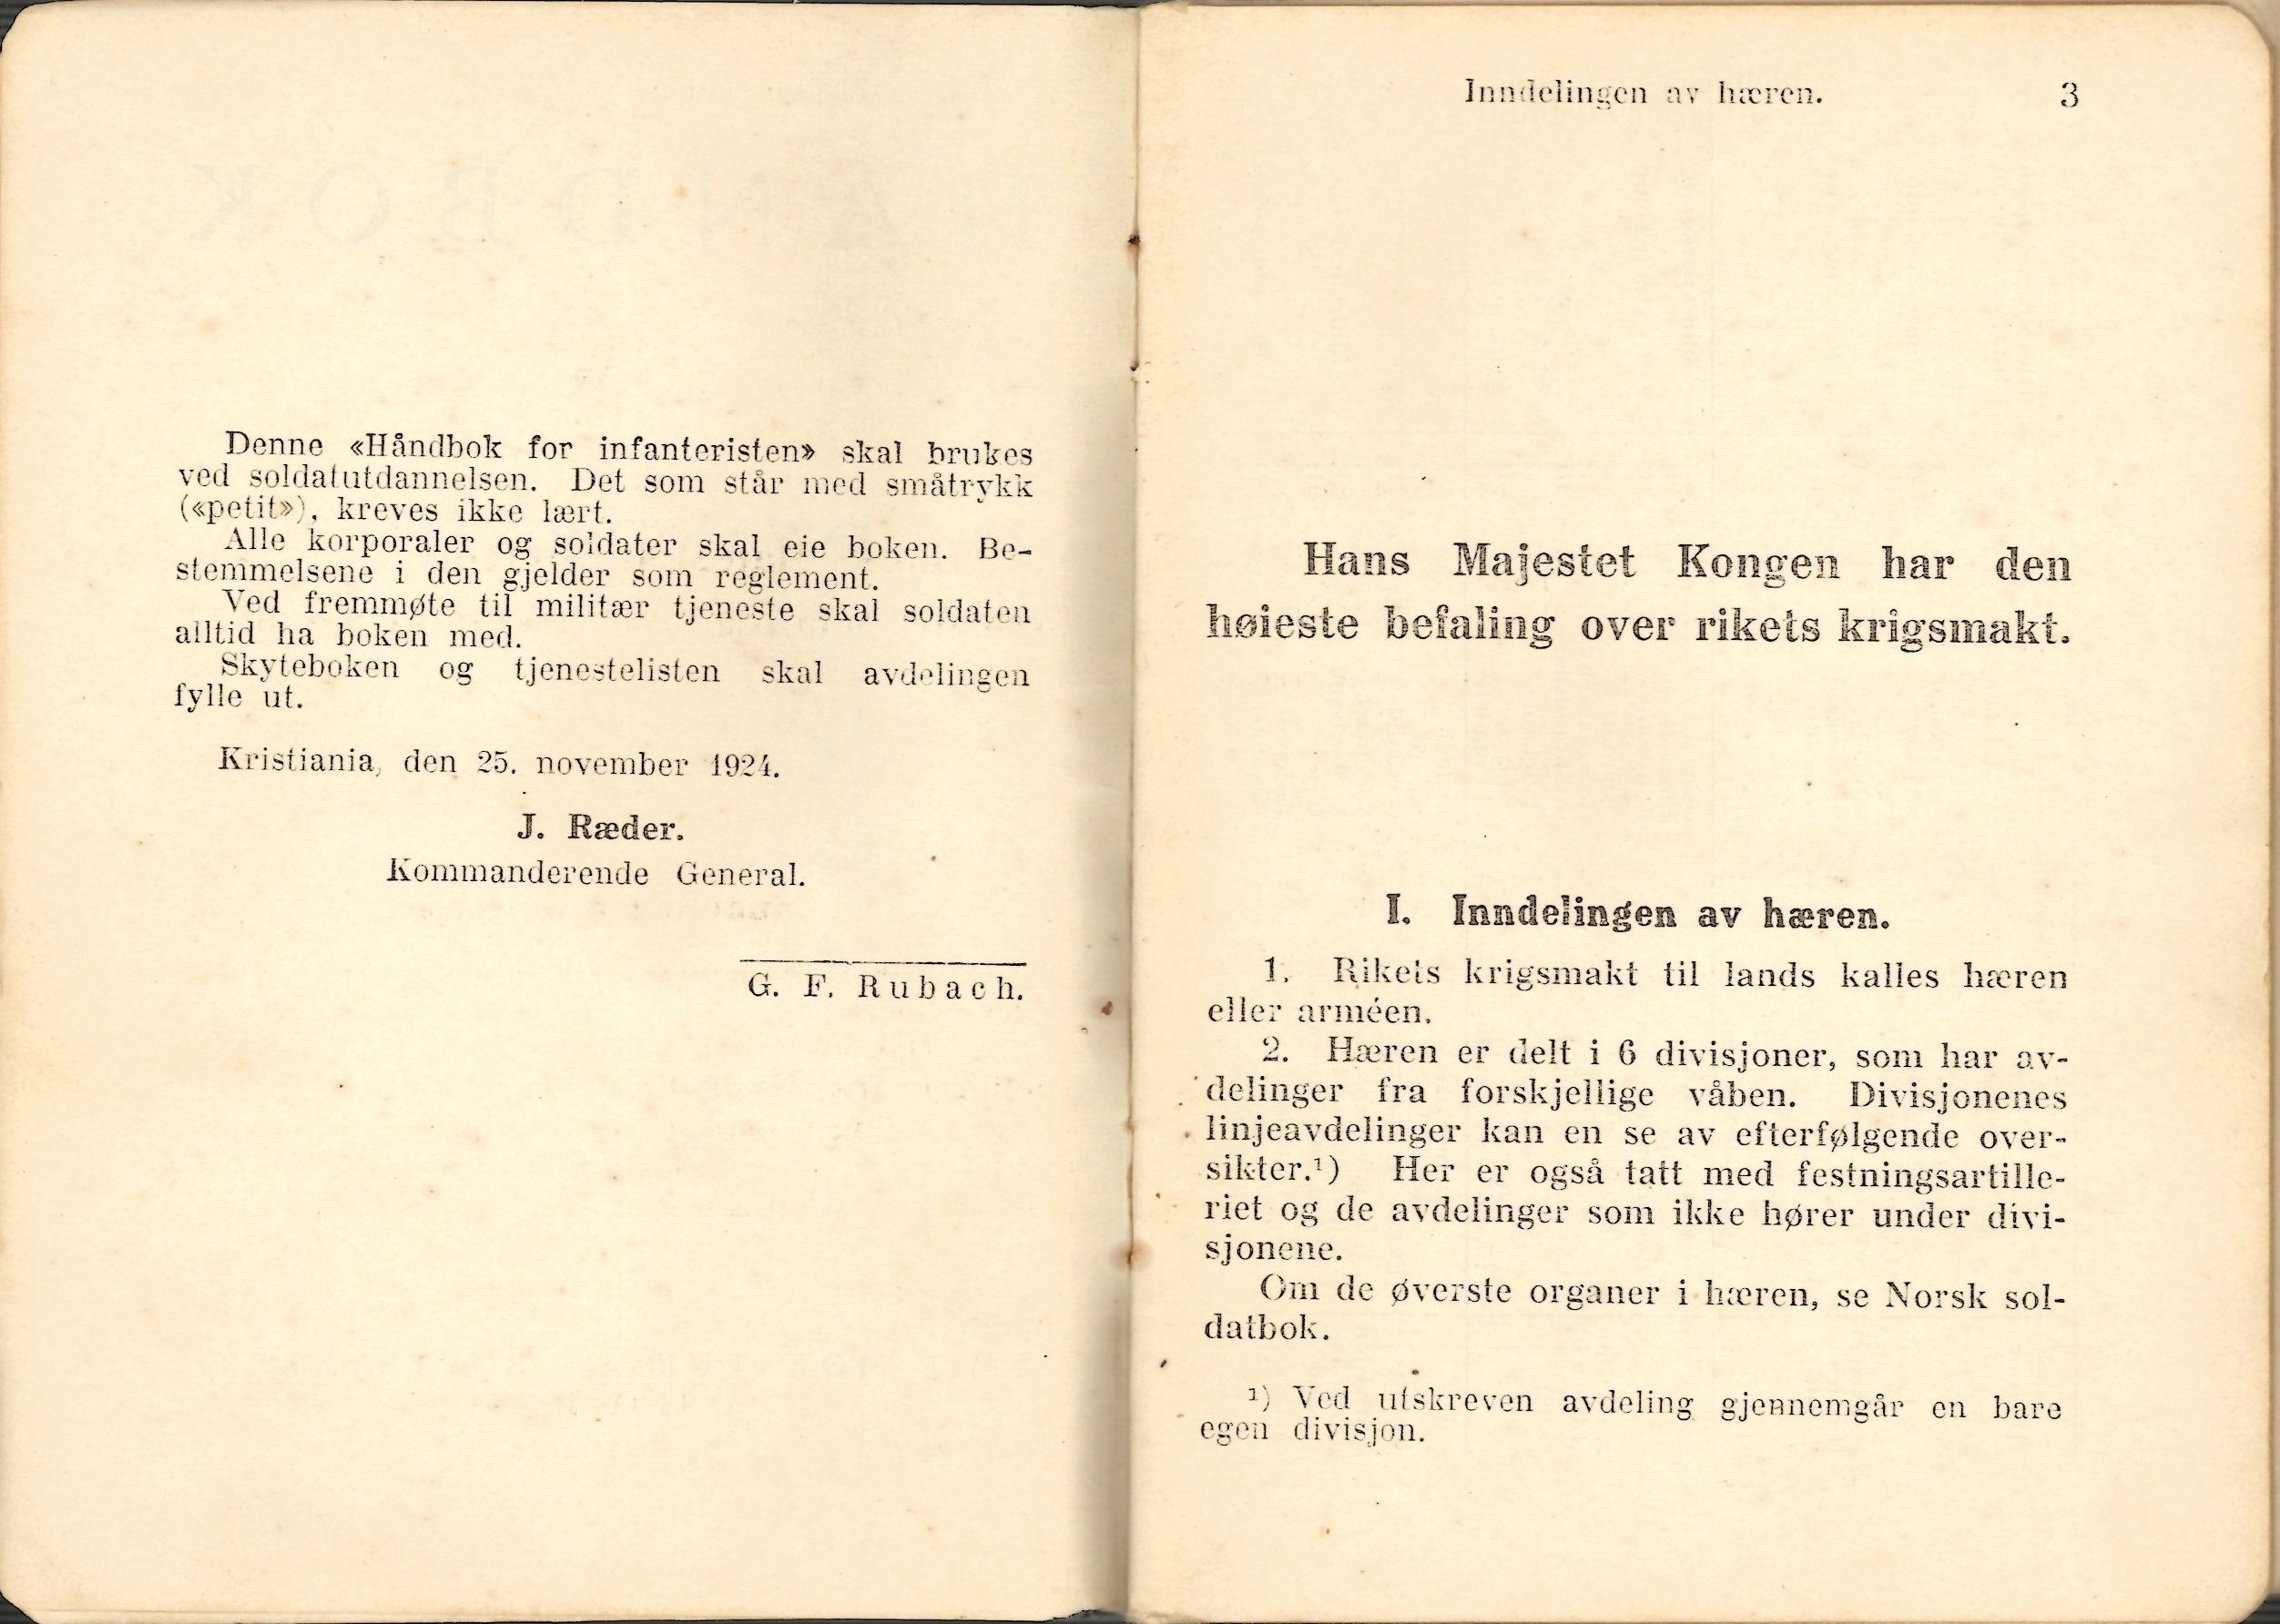 ./doc/reglement/Haandbok1925/Haandbok-for-infanteristen-1925-3.jpg